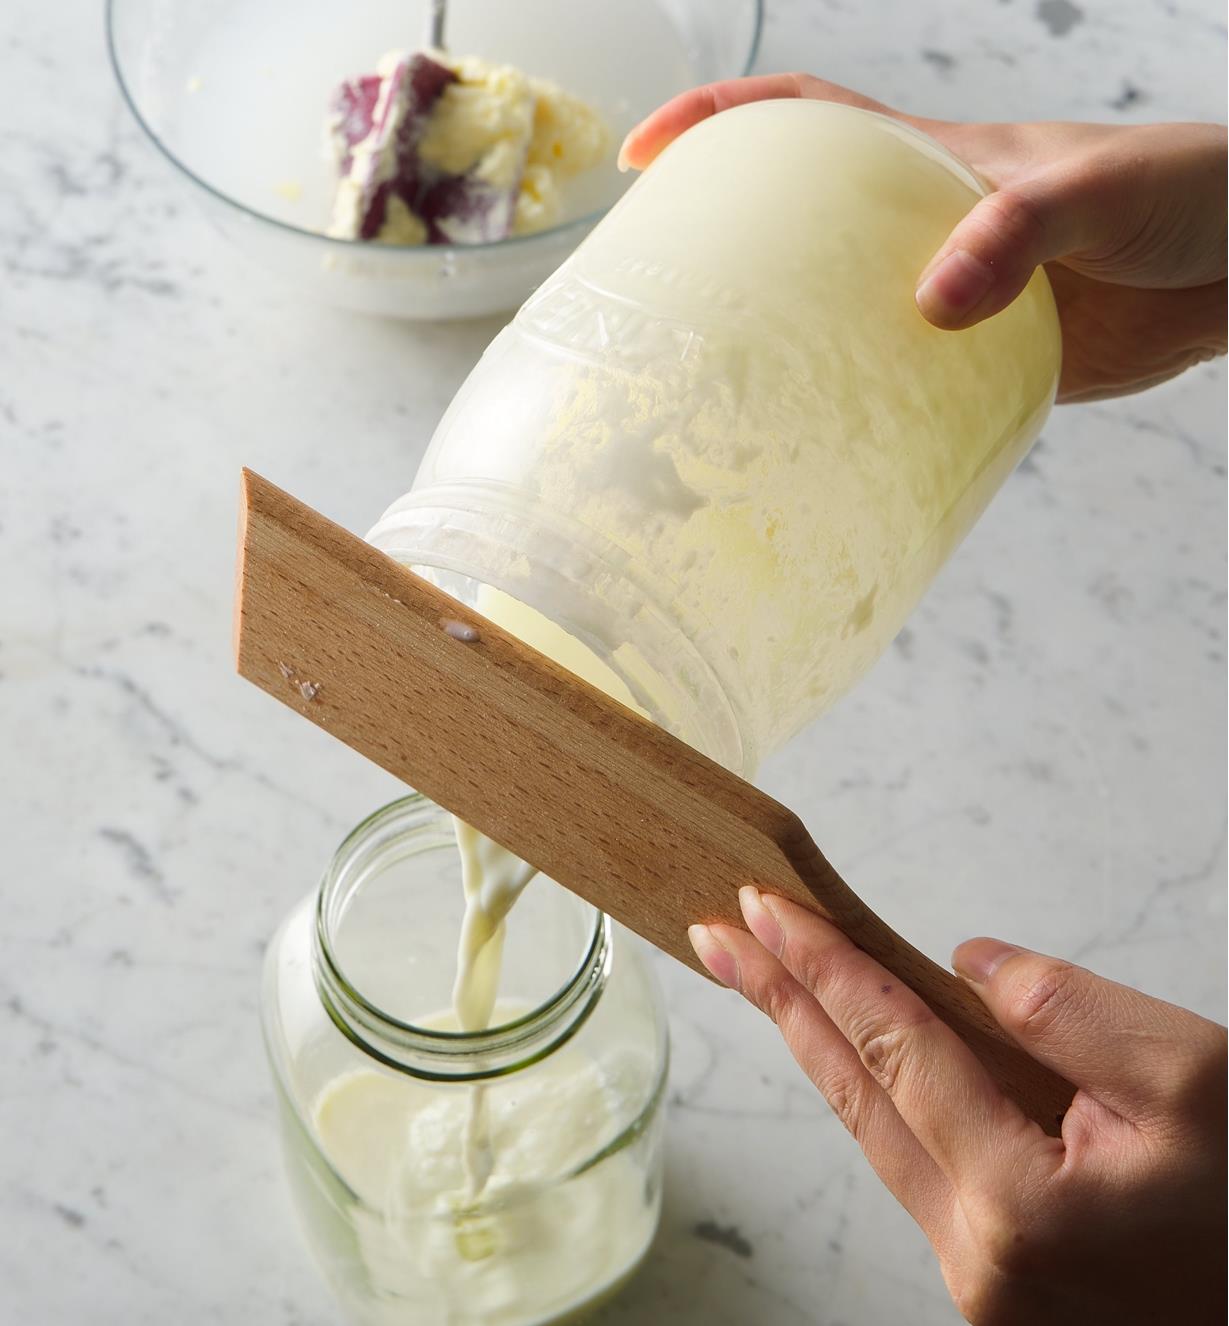 Personne utilisant une palette à beurre pour laisser le babeurre s'écouler d'une baratte à manivelle